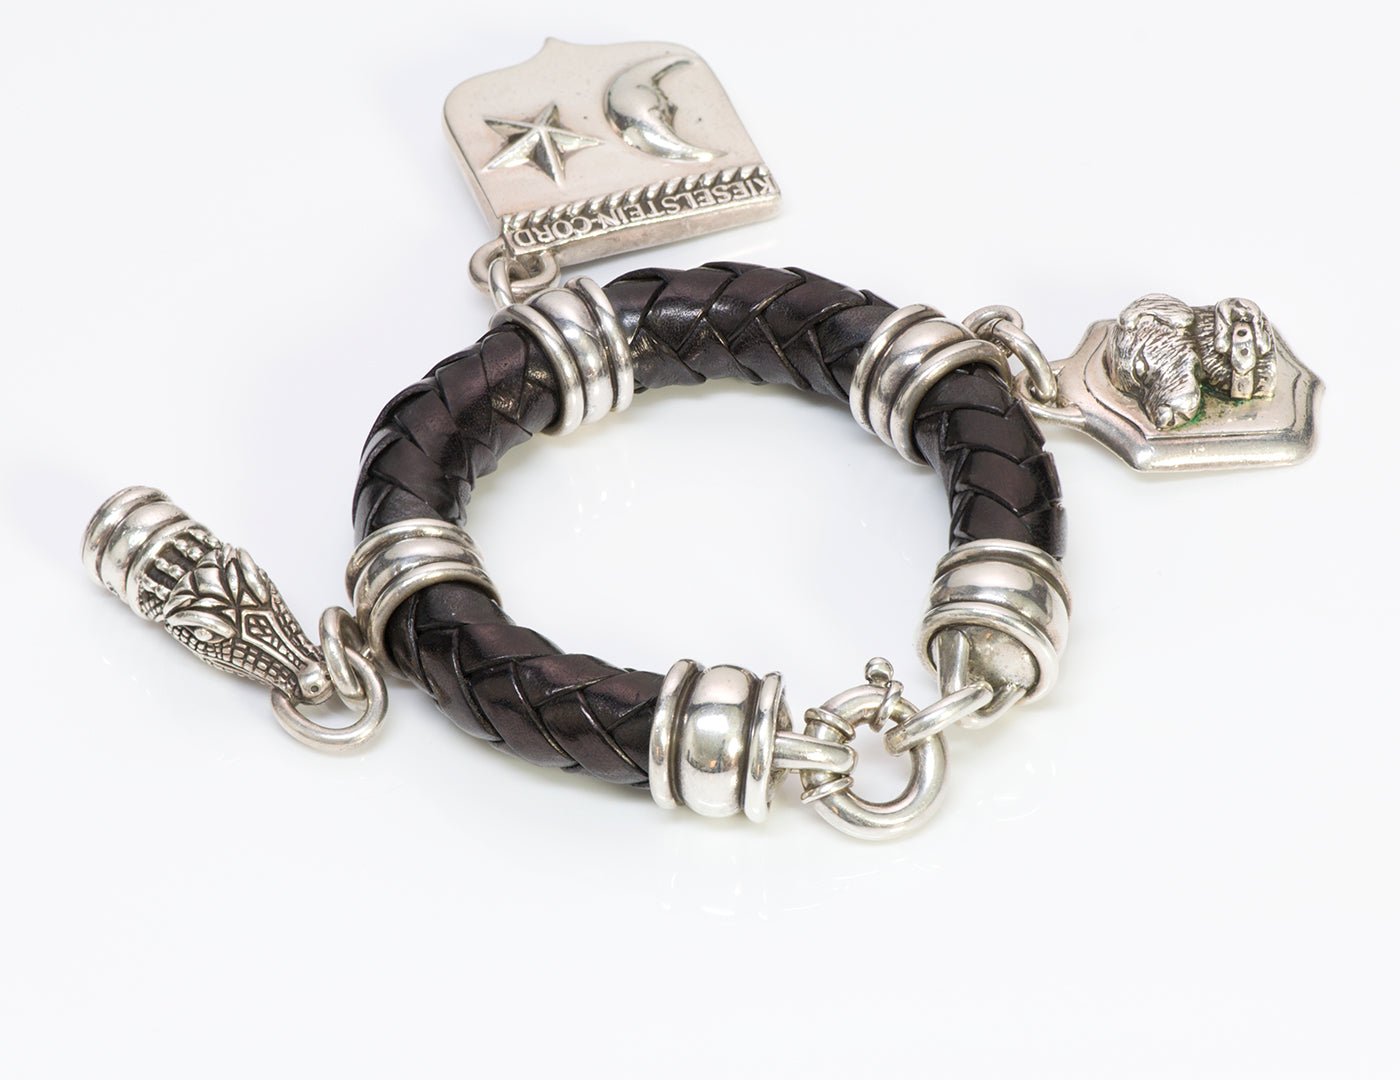 Barry Kieselstein-Cord Silver Charm Leather Bracelet